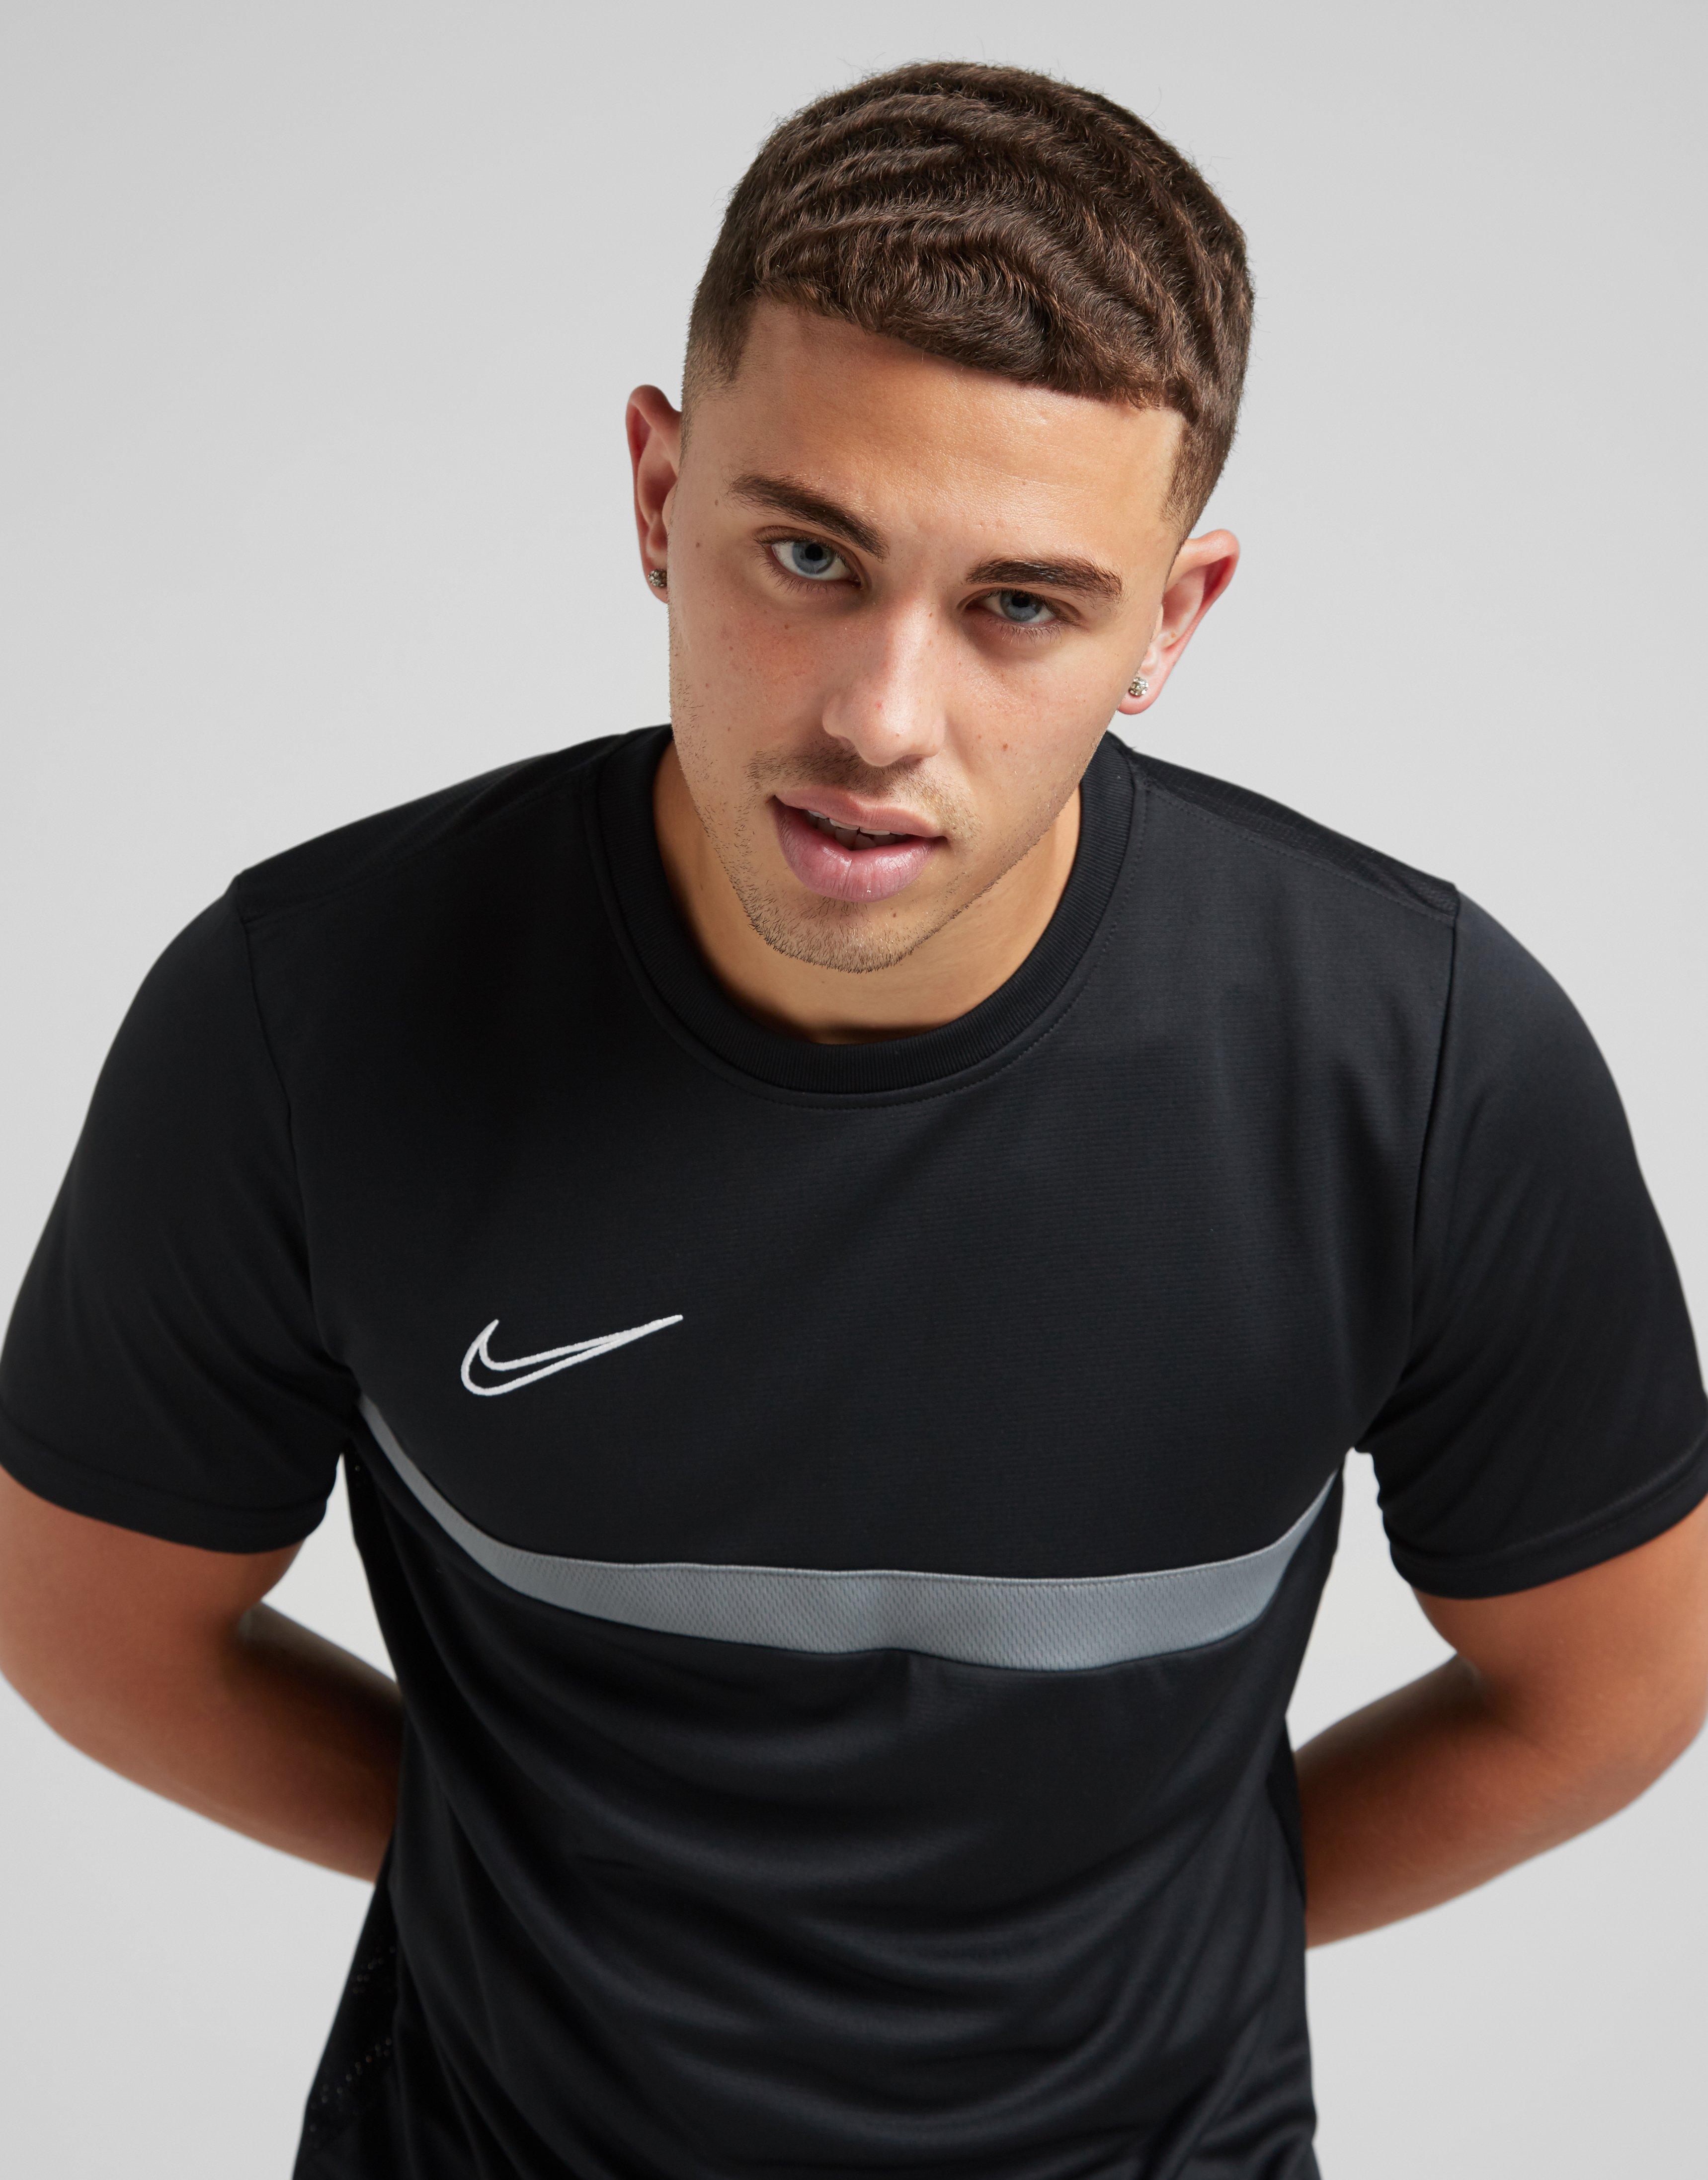 Nike Next Gen T-Shirt